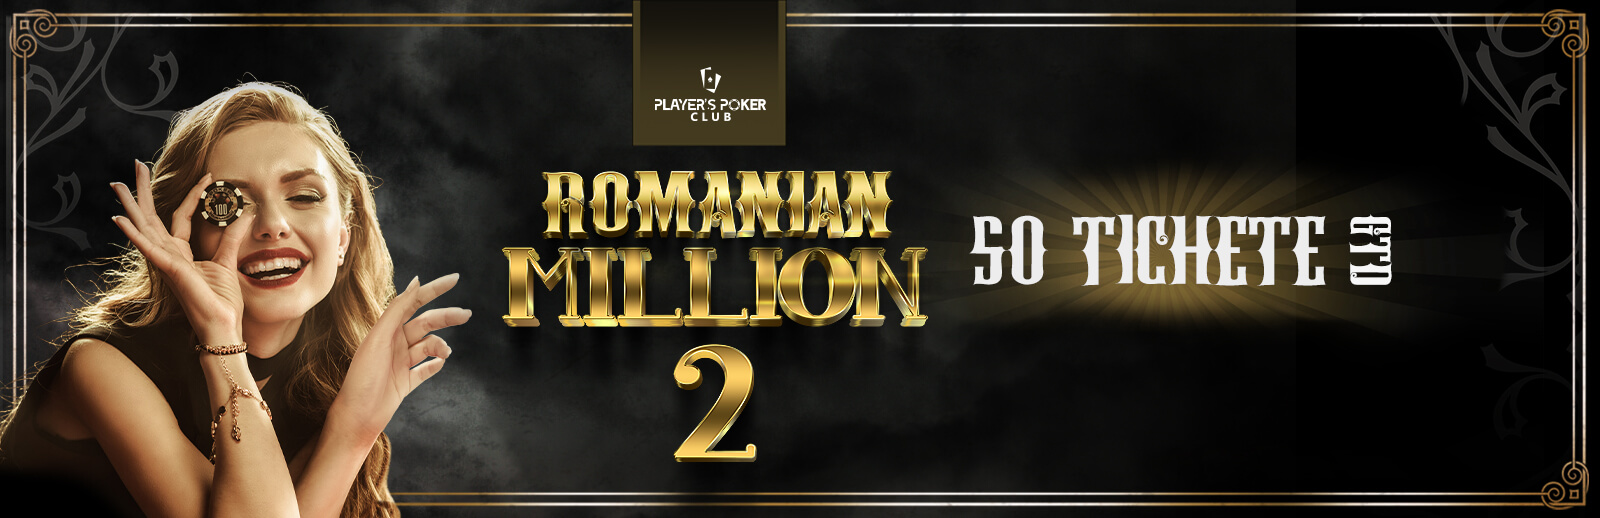 Romanian Million 2